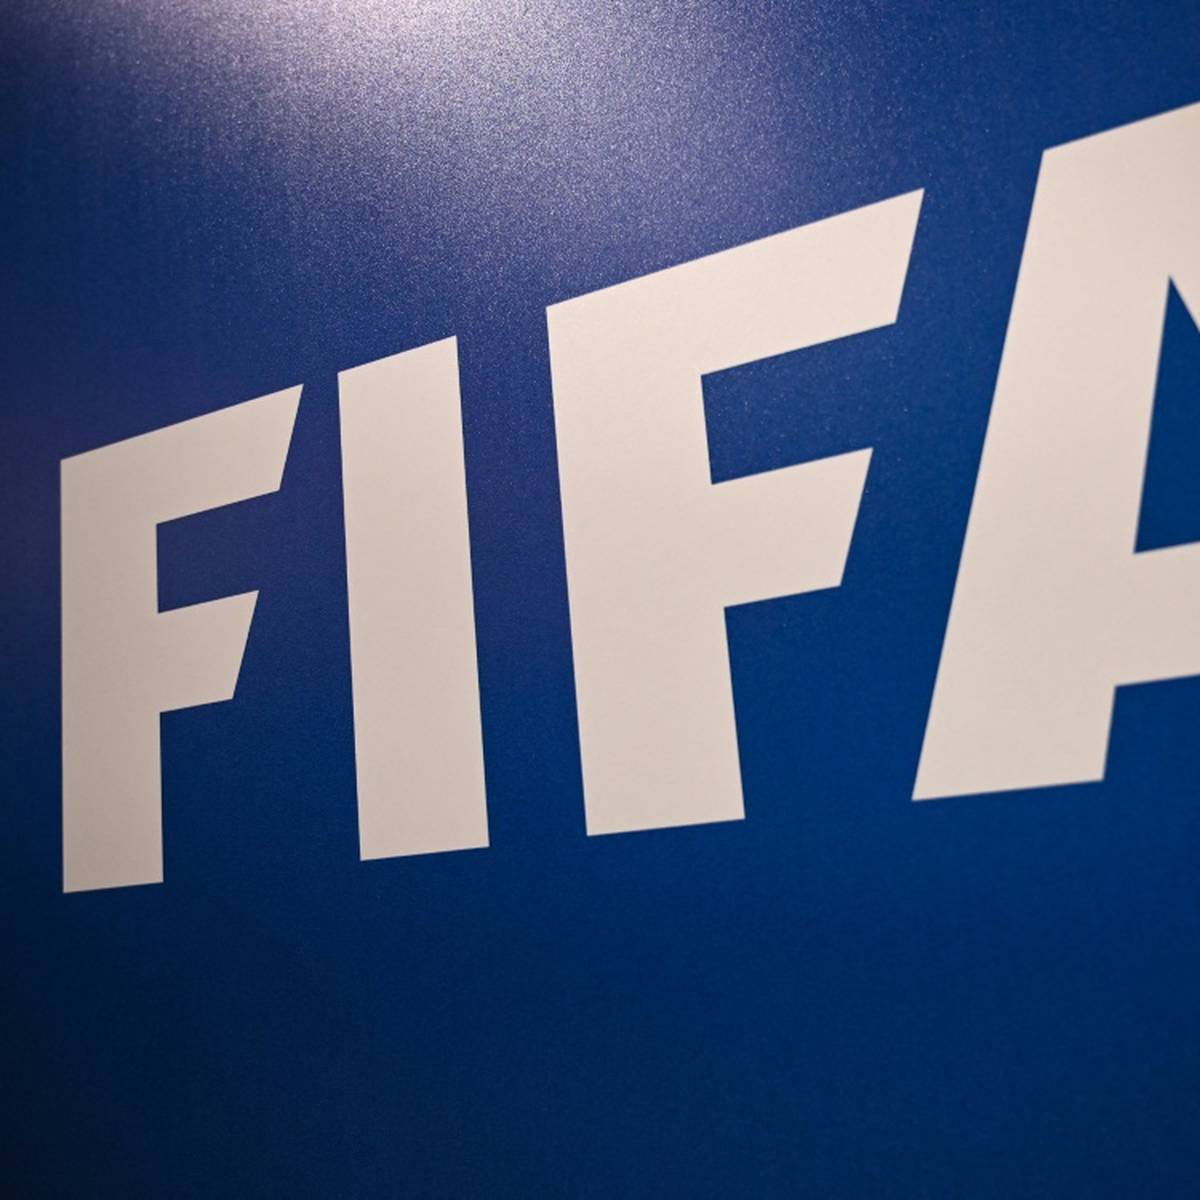 Die FIFA plant strengere Bestimmungen für die Leihgabe von Spielern. Vor allem die Anzahl und die Dauer von Leihgeschäften sollen beschränkt werden.